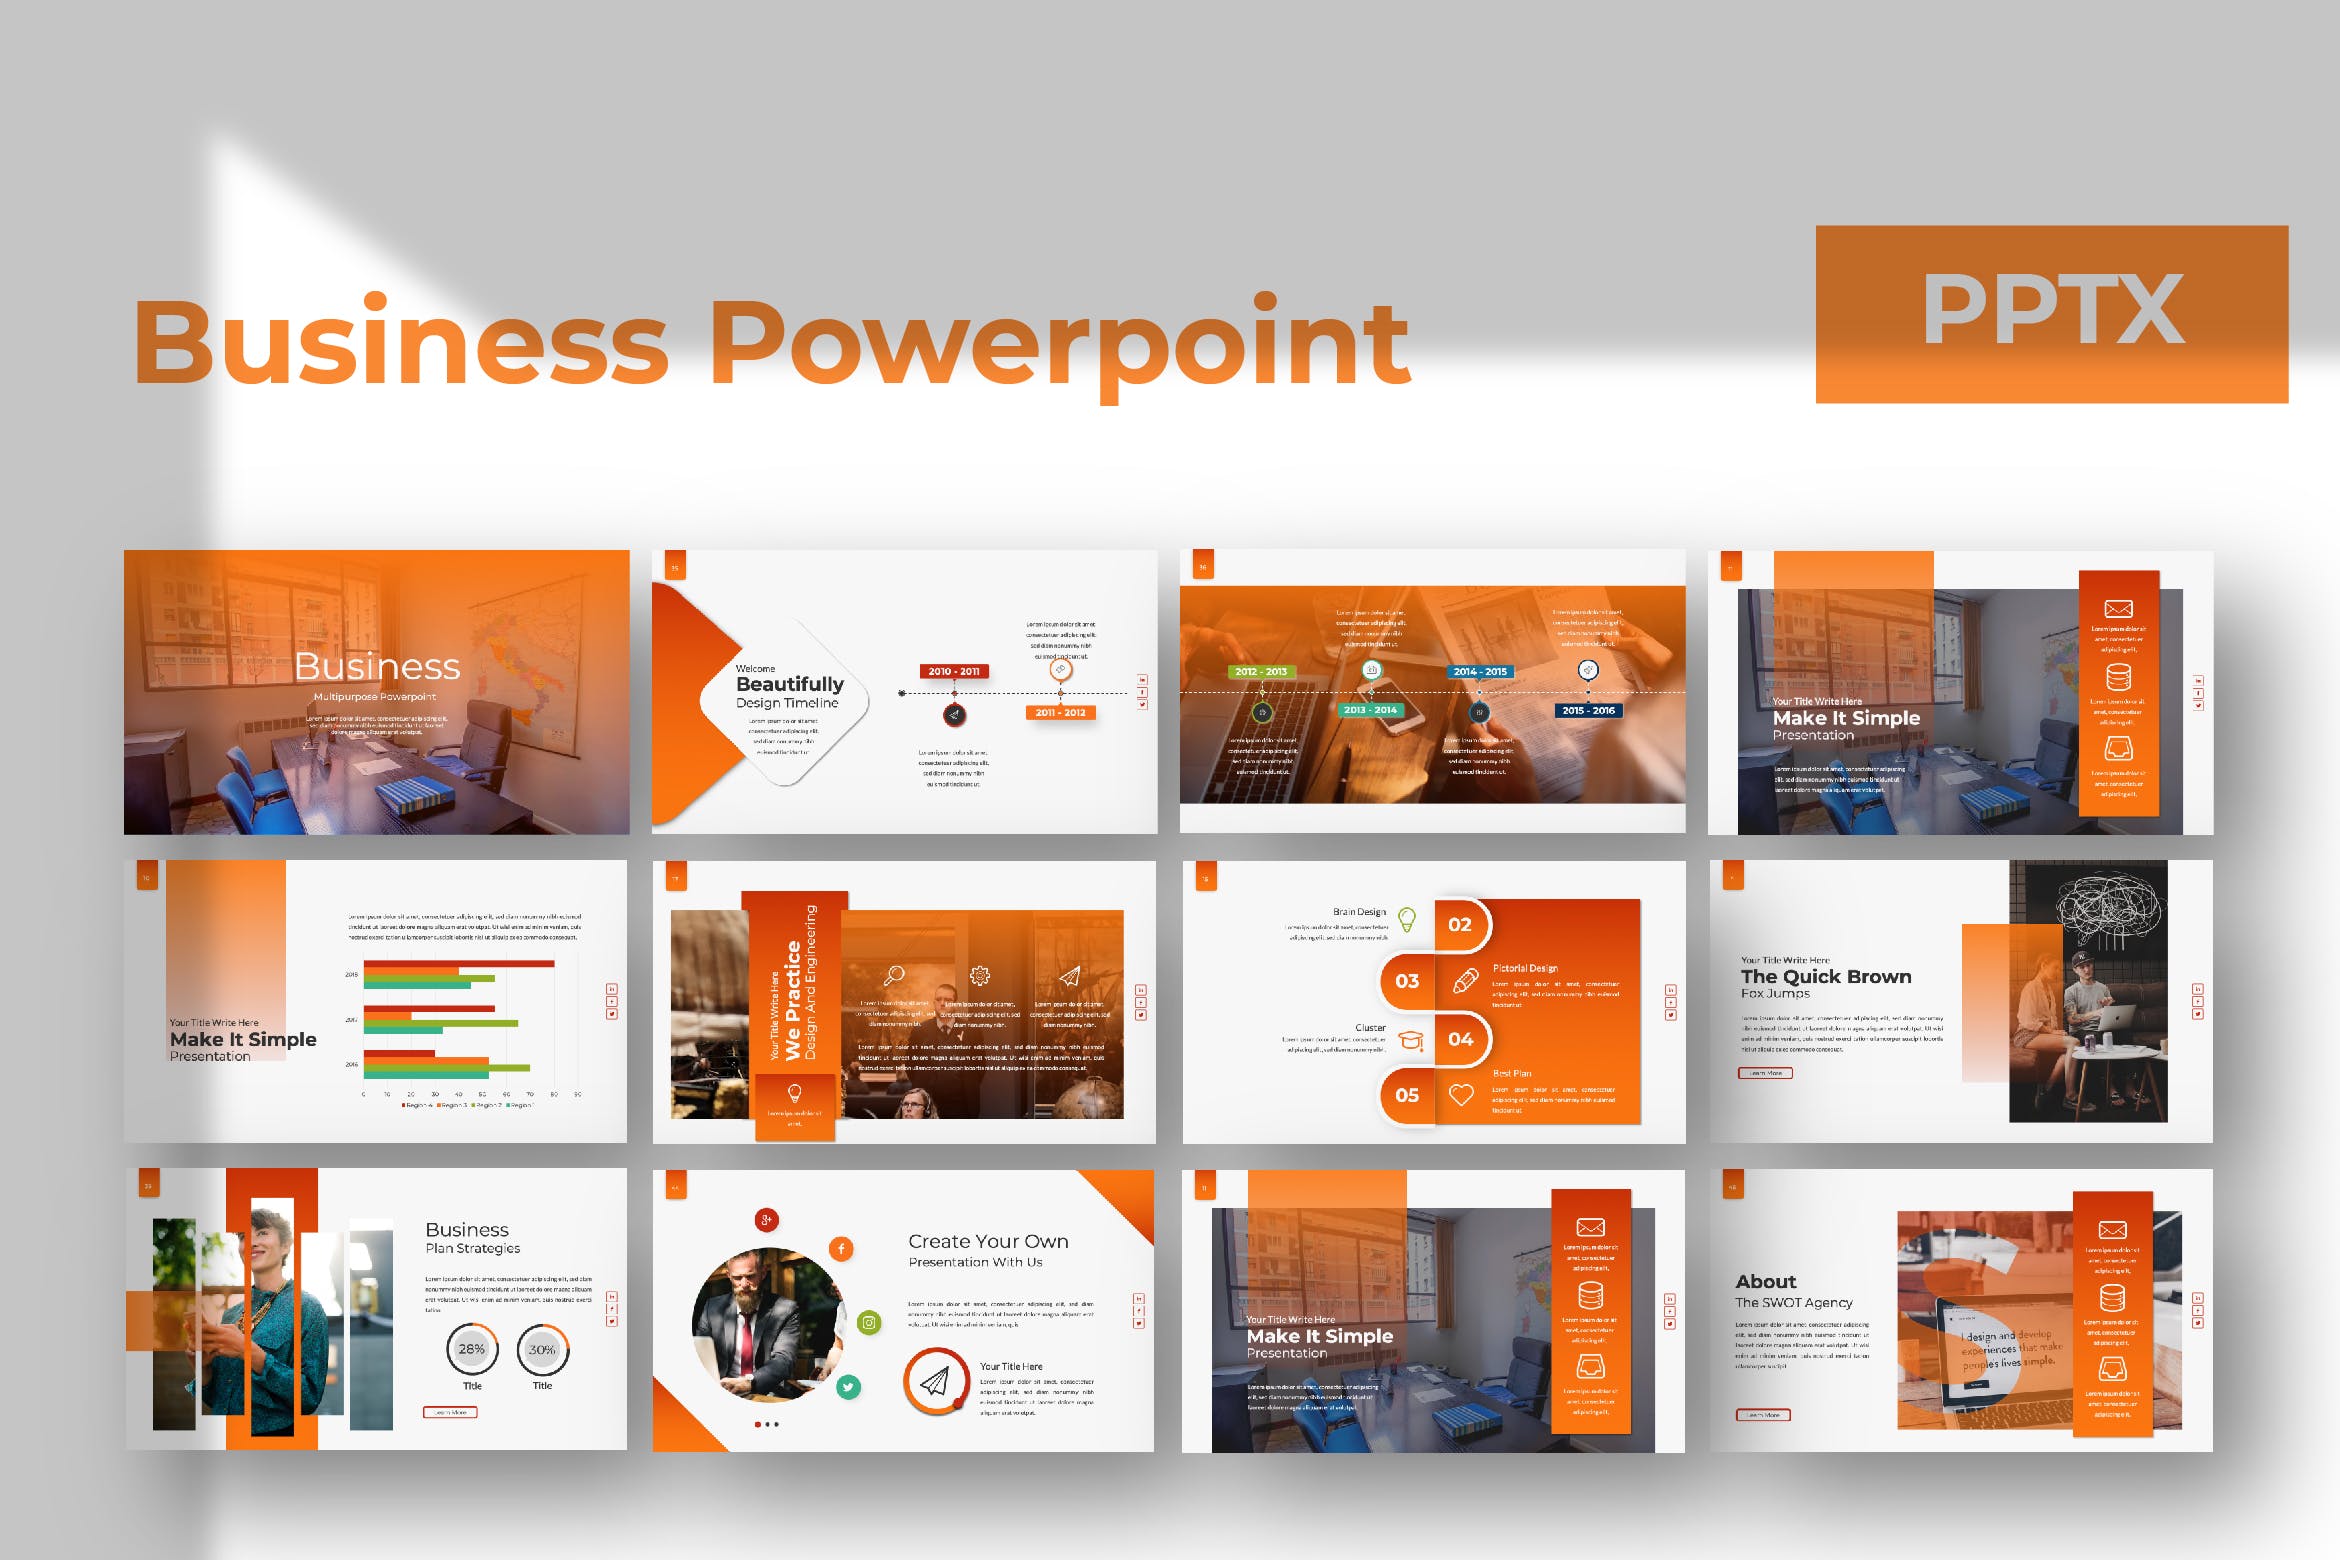 企业市场规划业务发展计划PPT幻灯片设计模板 Busines